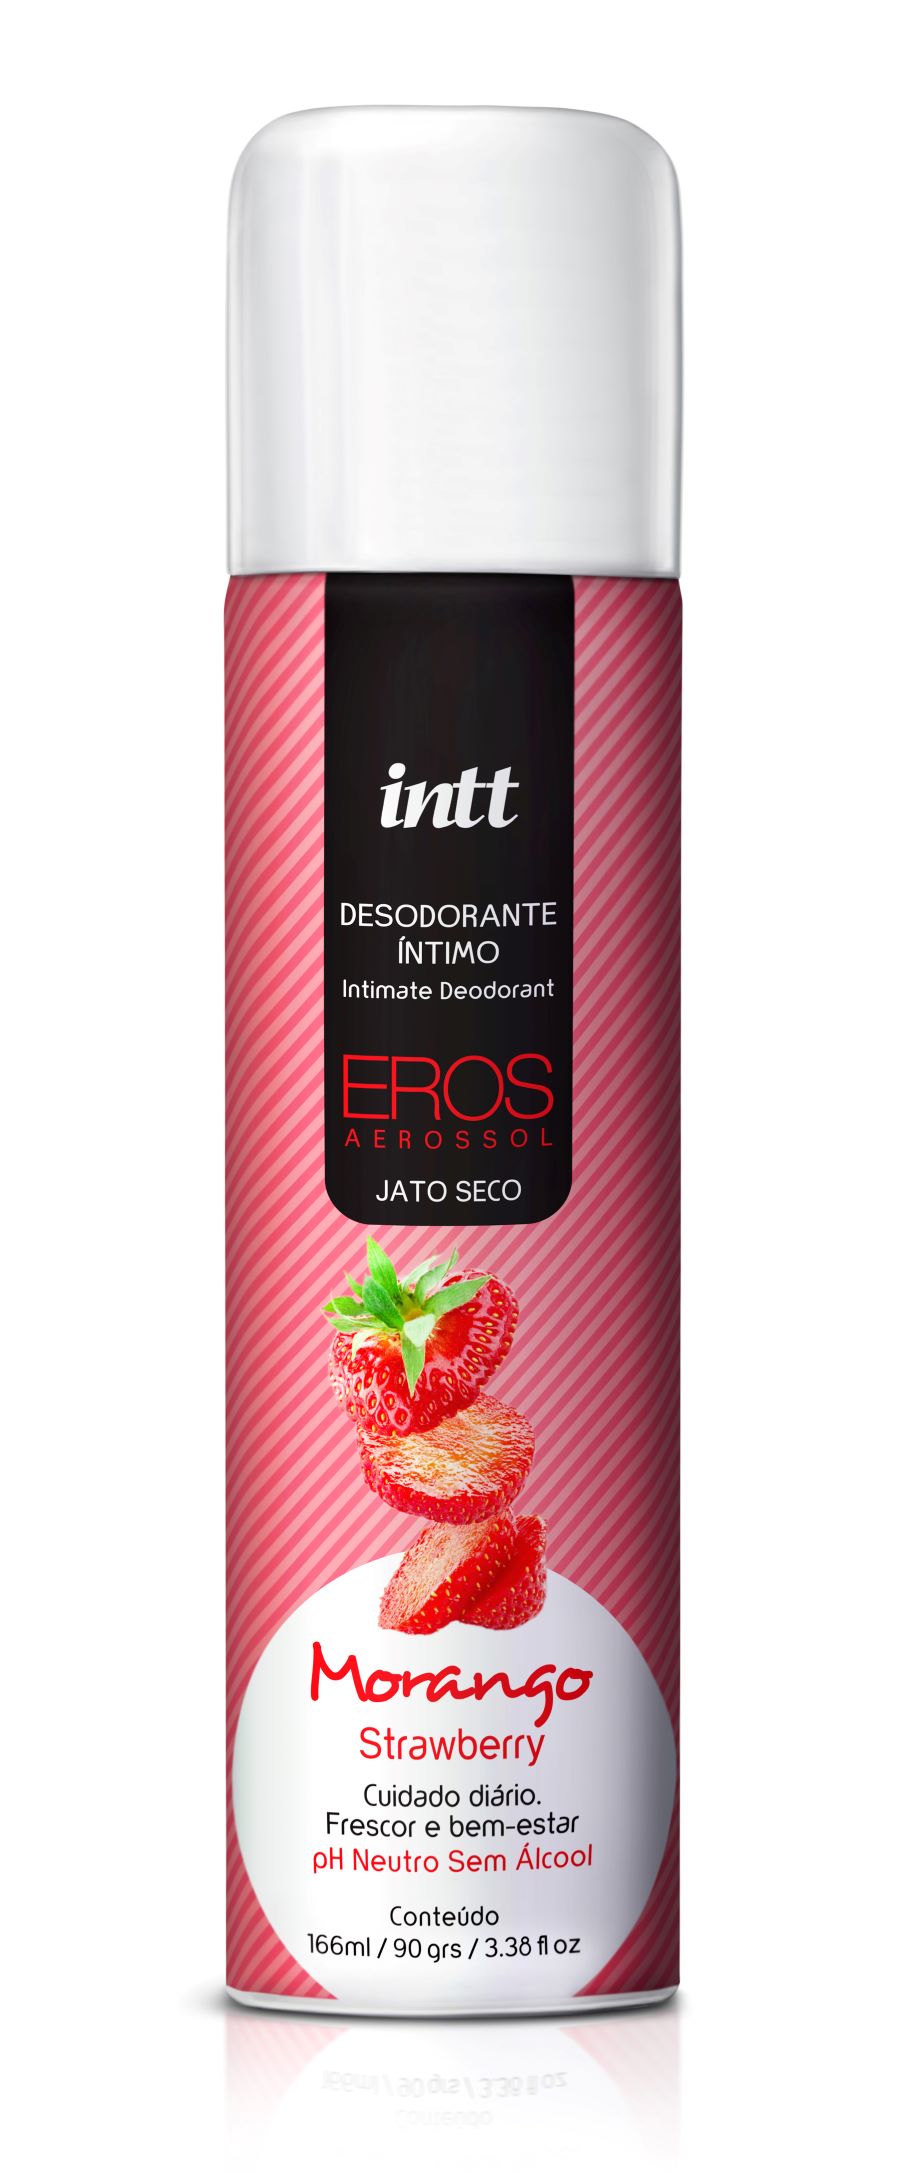 Desodorante Íntimo Eros Aerosol jato seco Morango INTT